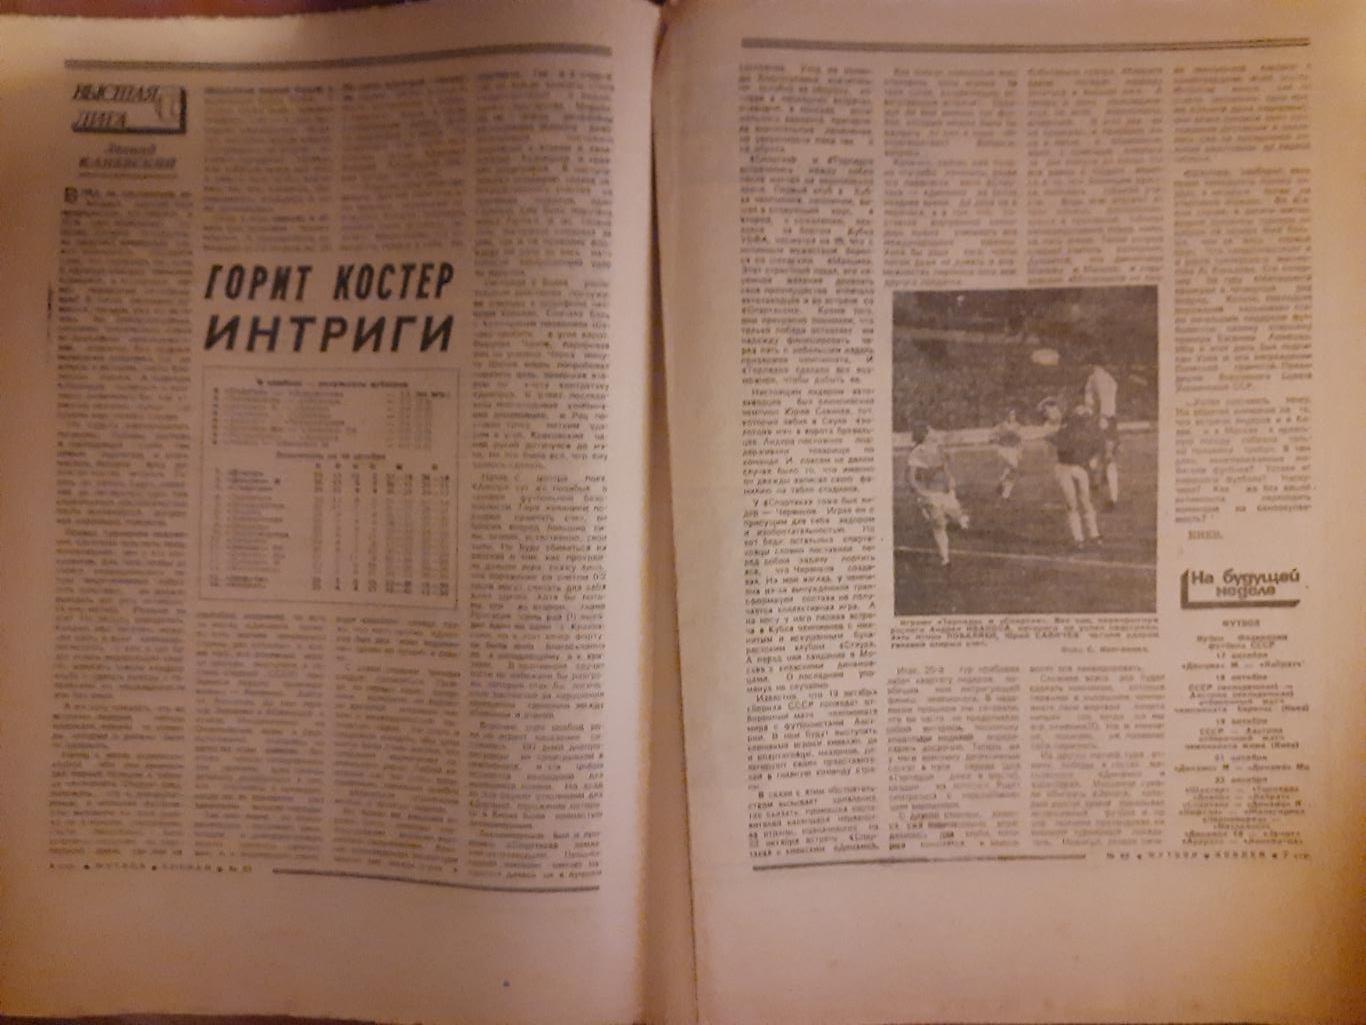 еженедельник футбол-хоккей #42,1988 2